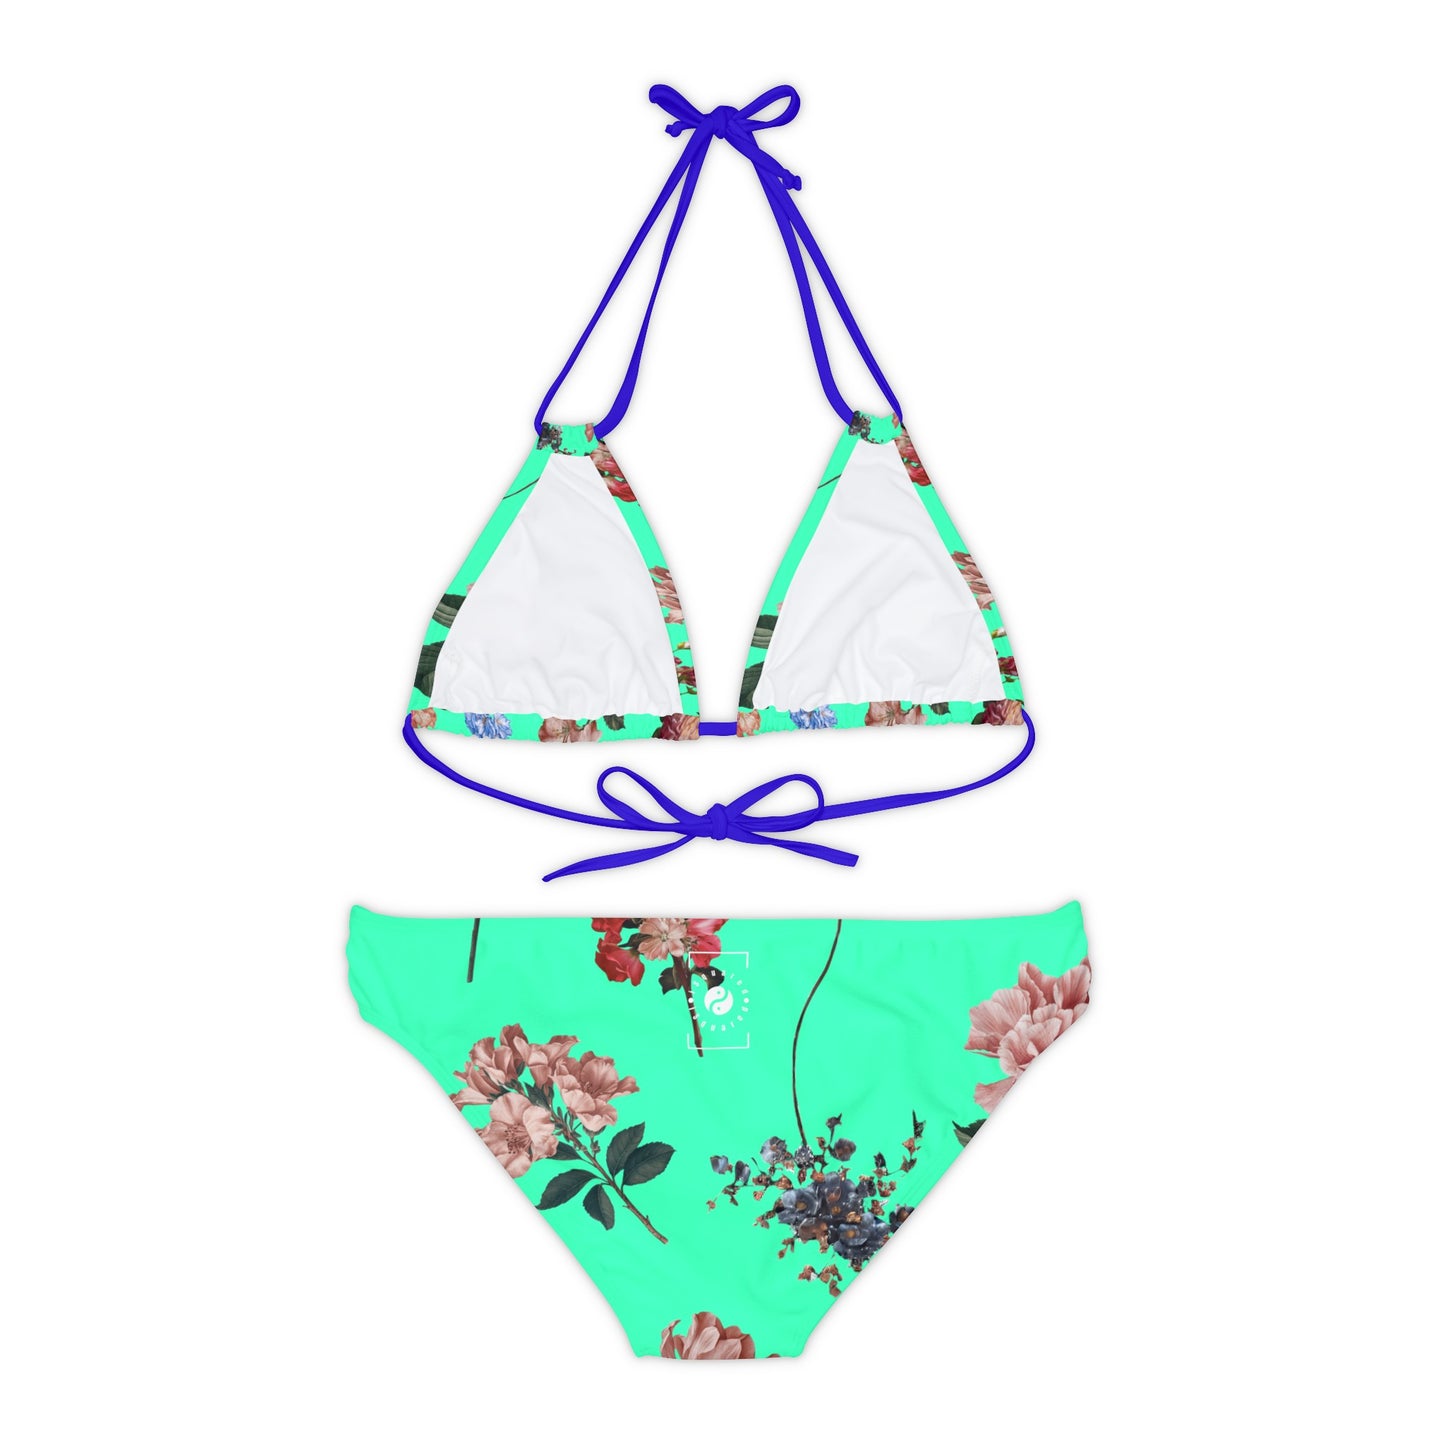 Botanicals on Turquoise - Lace-up Bikini Set